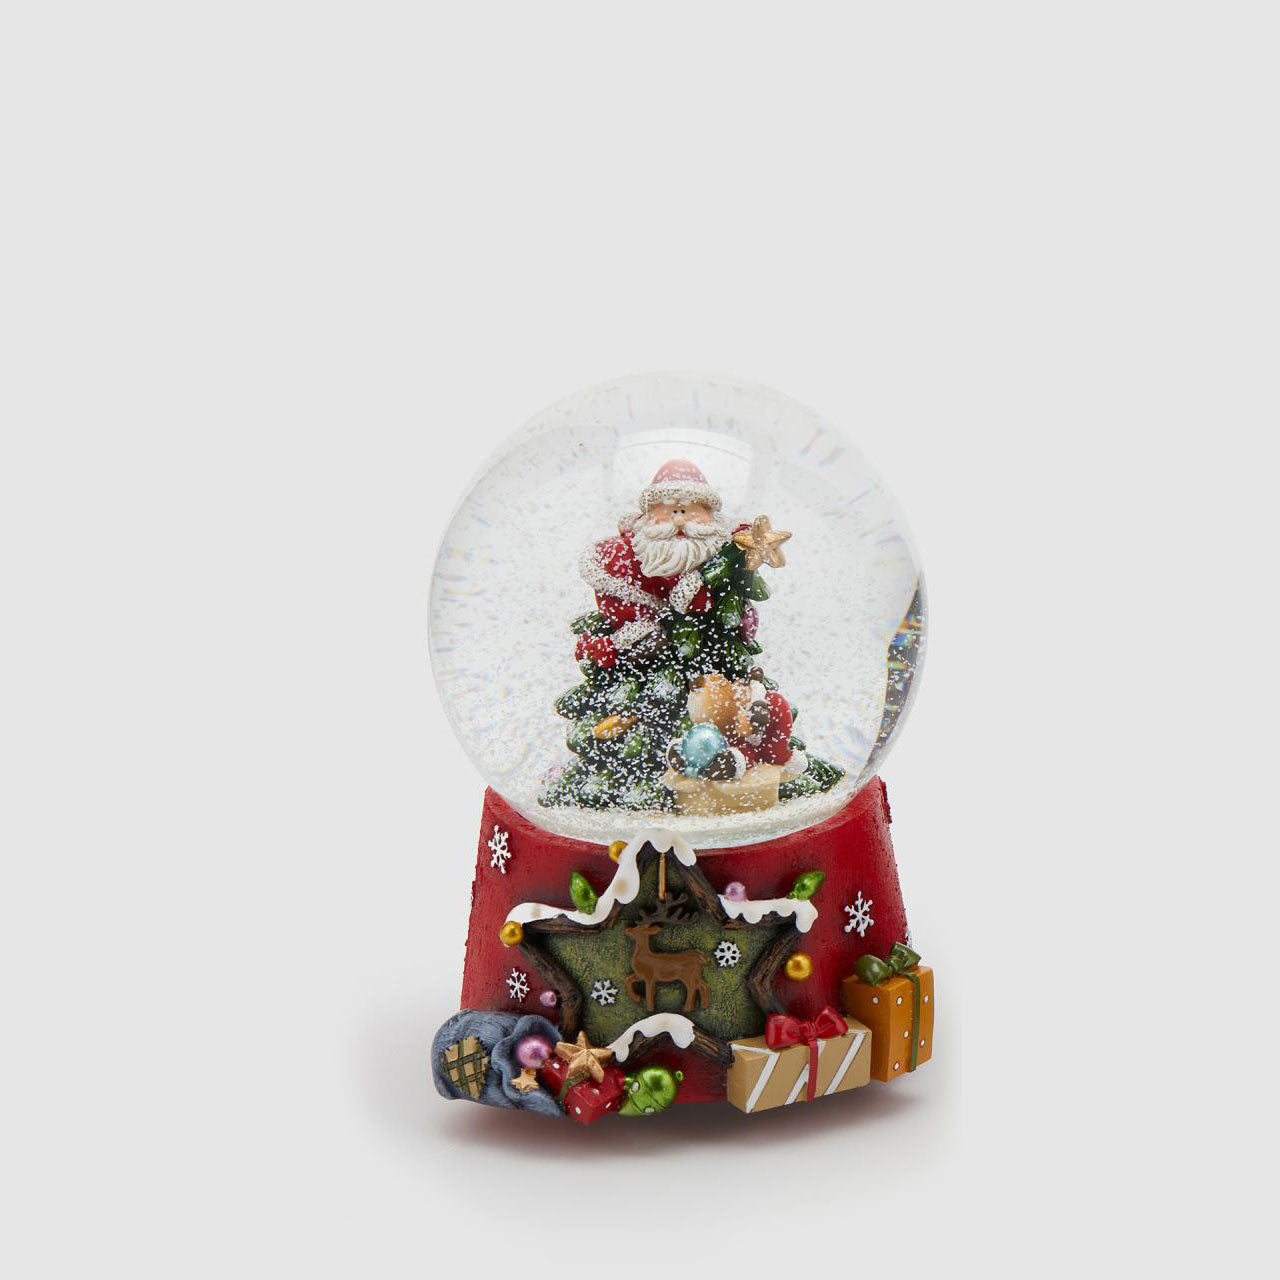 EDG Palla Globo di Neve con Babbo Natale c/Carillon 15cm Decorazione Natalizia